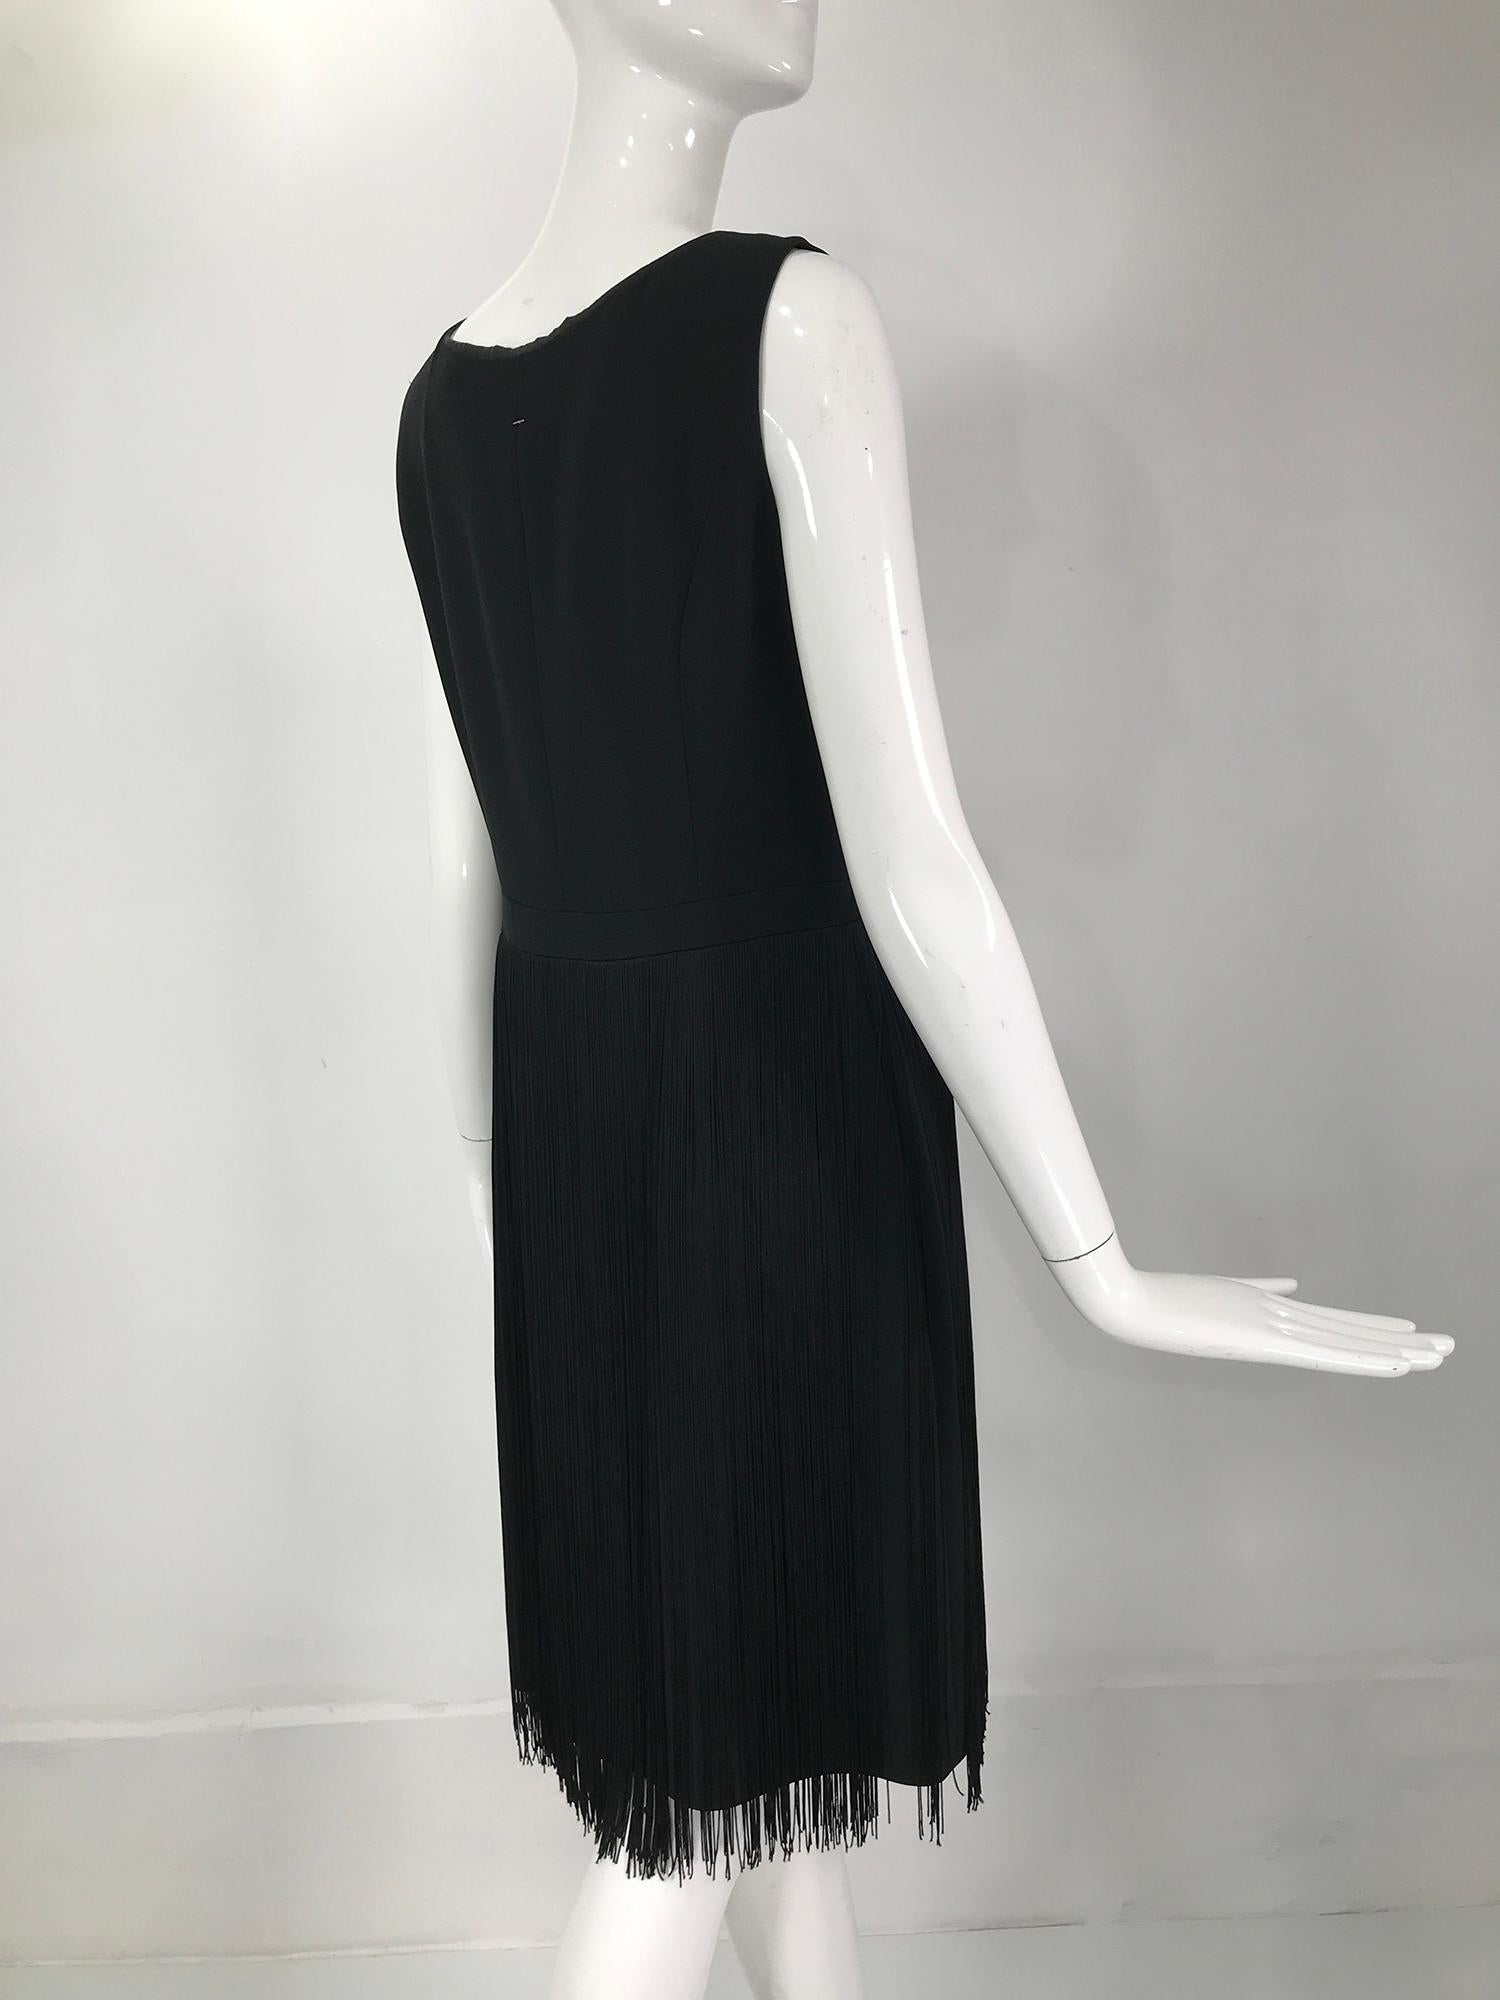 Moschino Sleeveless Black Crepe Bow Waist Fringe Skirt Dress 1990s For Sale 2